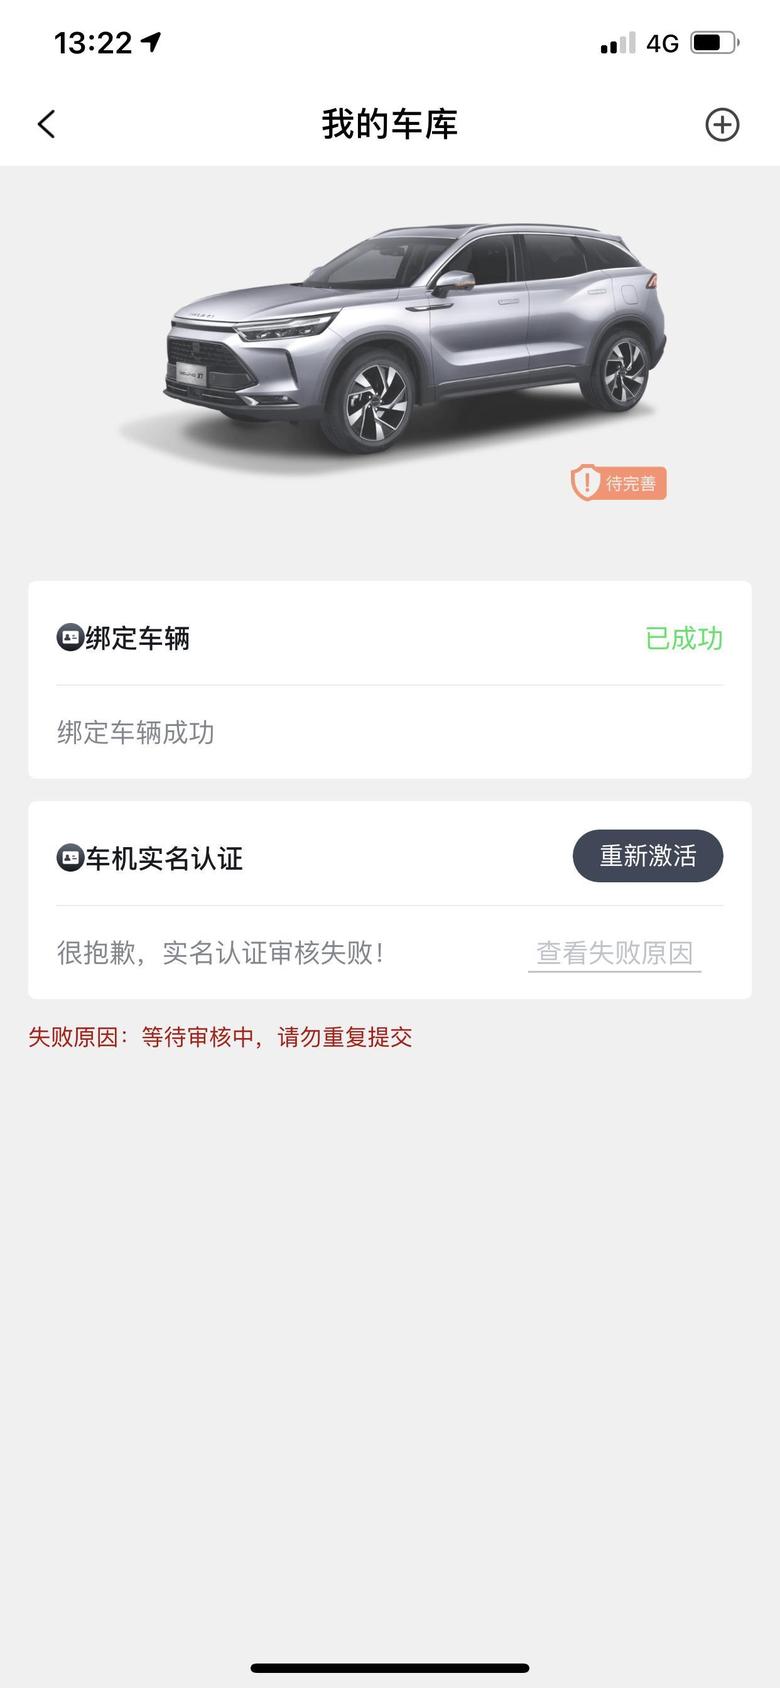 北京x7 发短信说认证成功了，车机网络也可以用，就是app一直这样，找那个在线客户又不理，一直这样不能登录，不能激活app